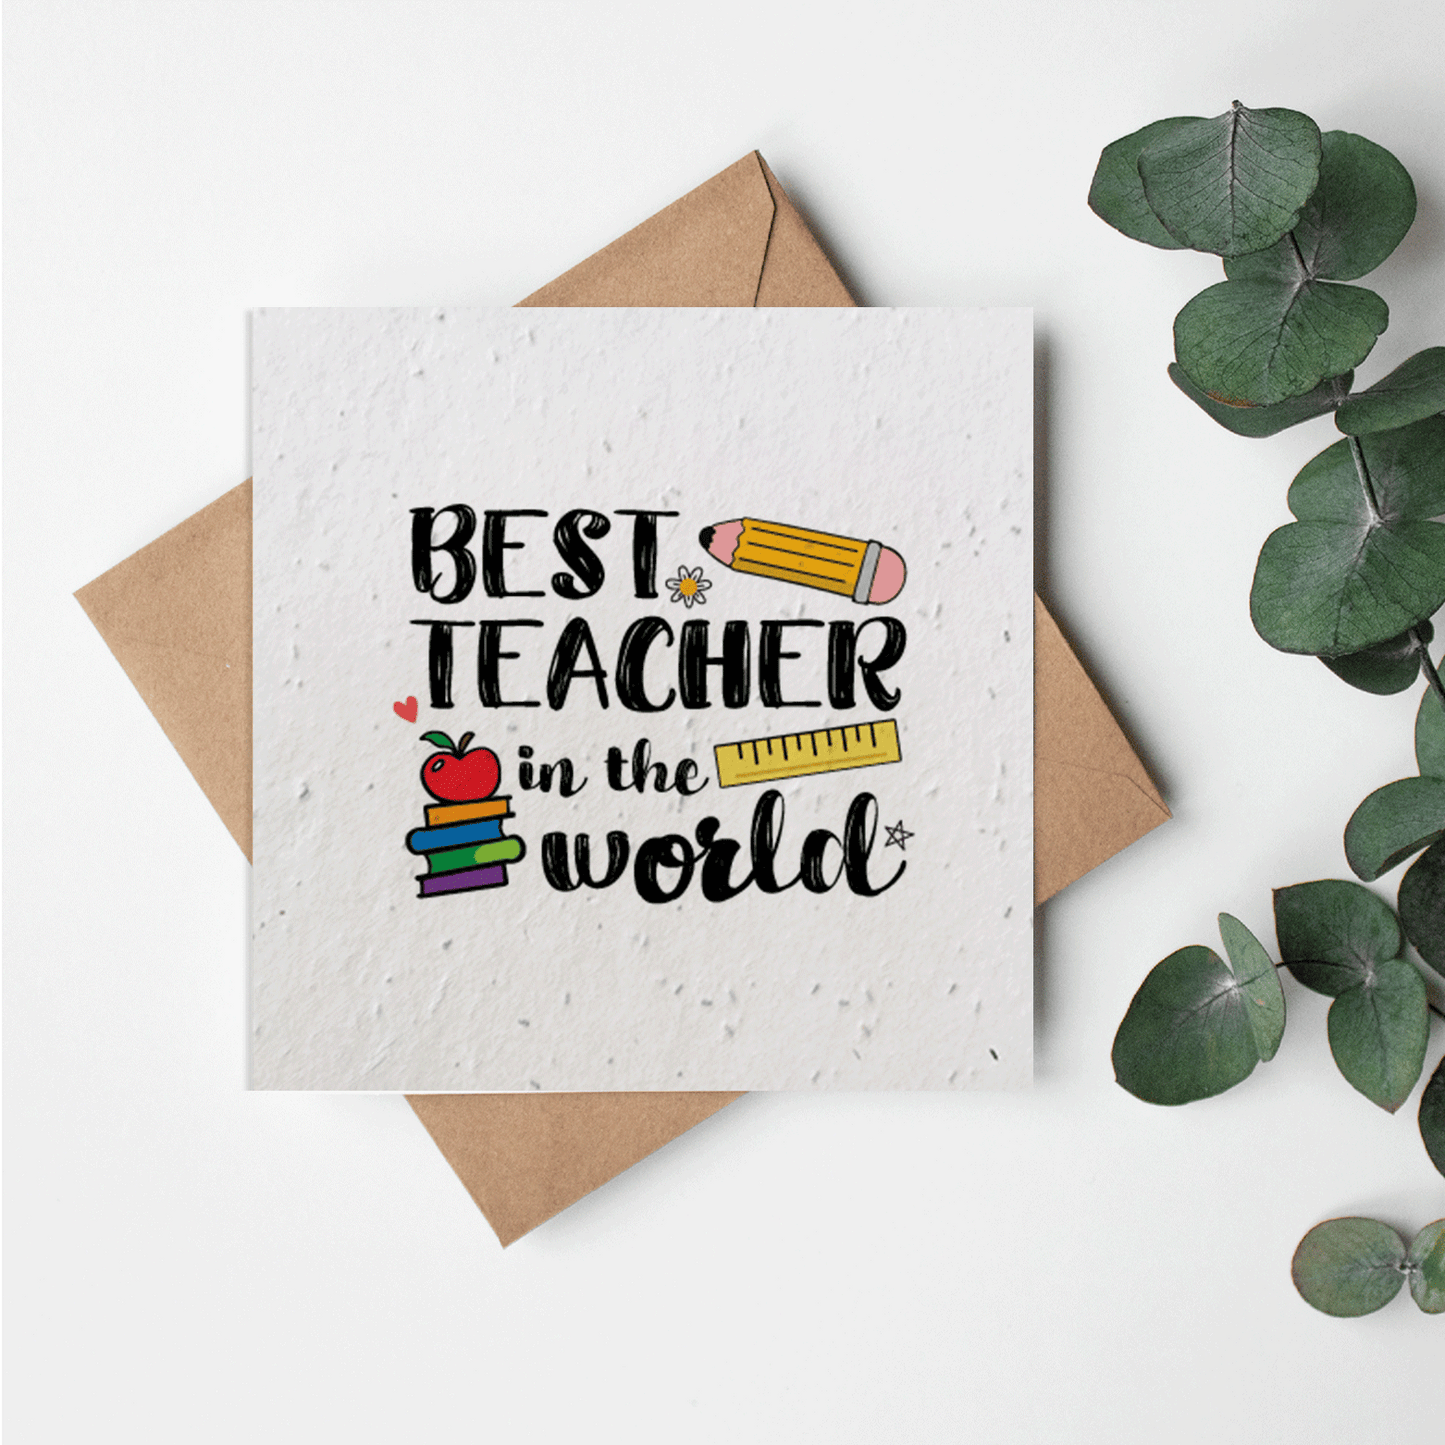 Academics - Best teacher